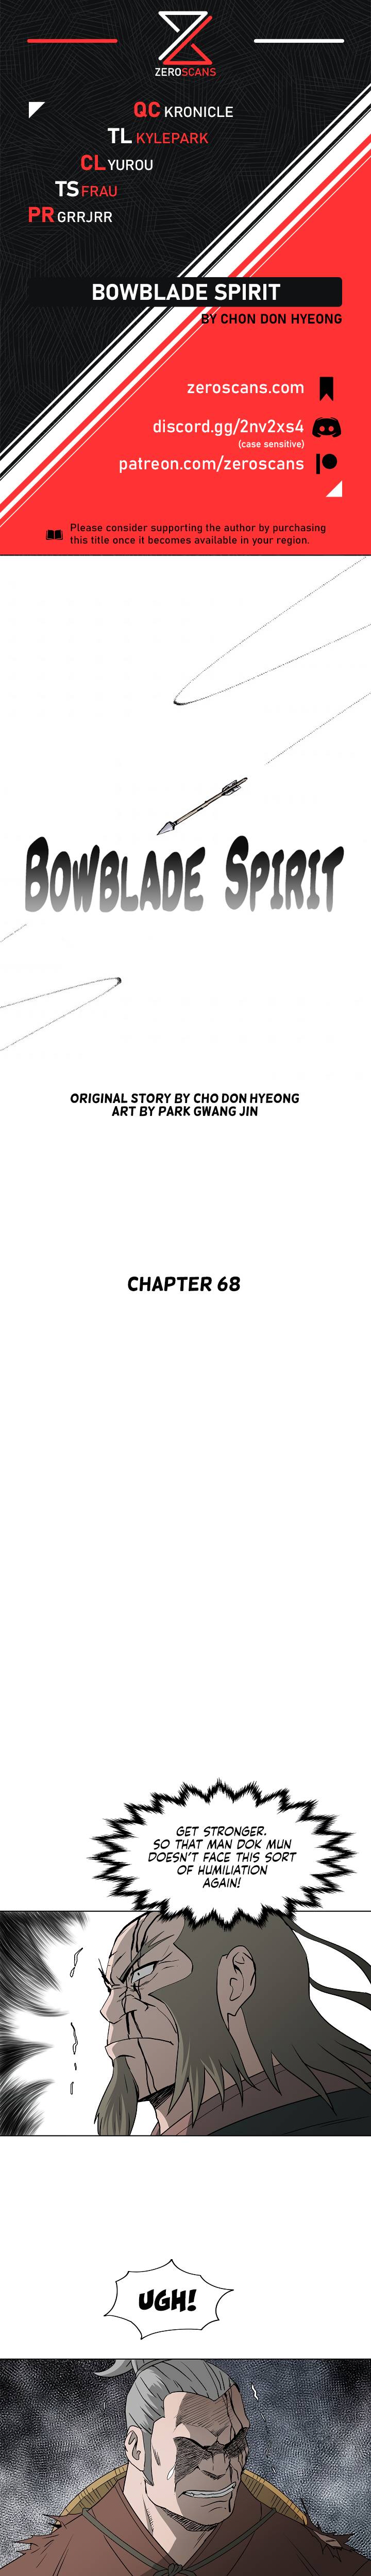 Bowblade Spirit - Chapter 68 Page 1